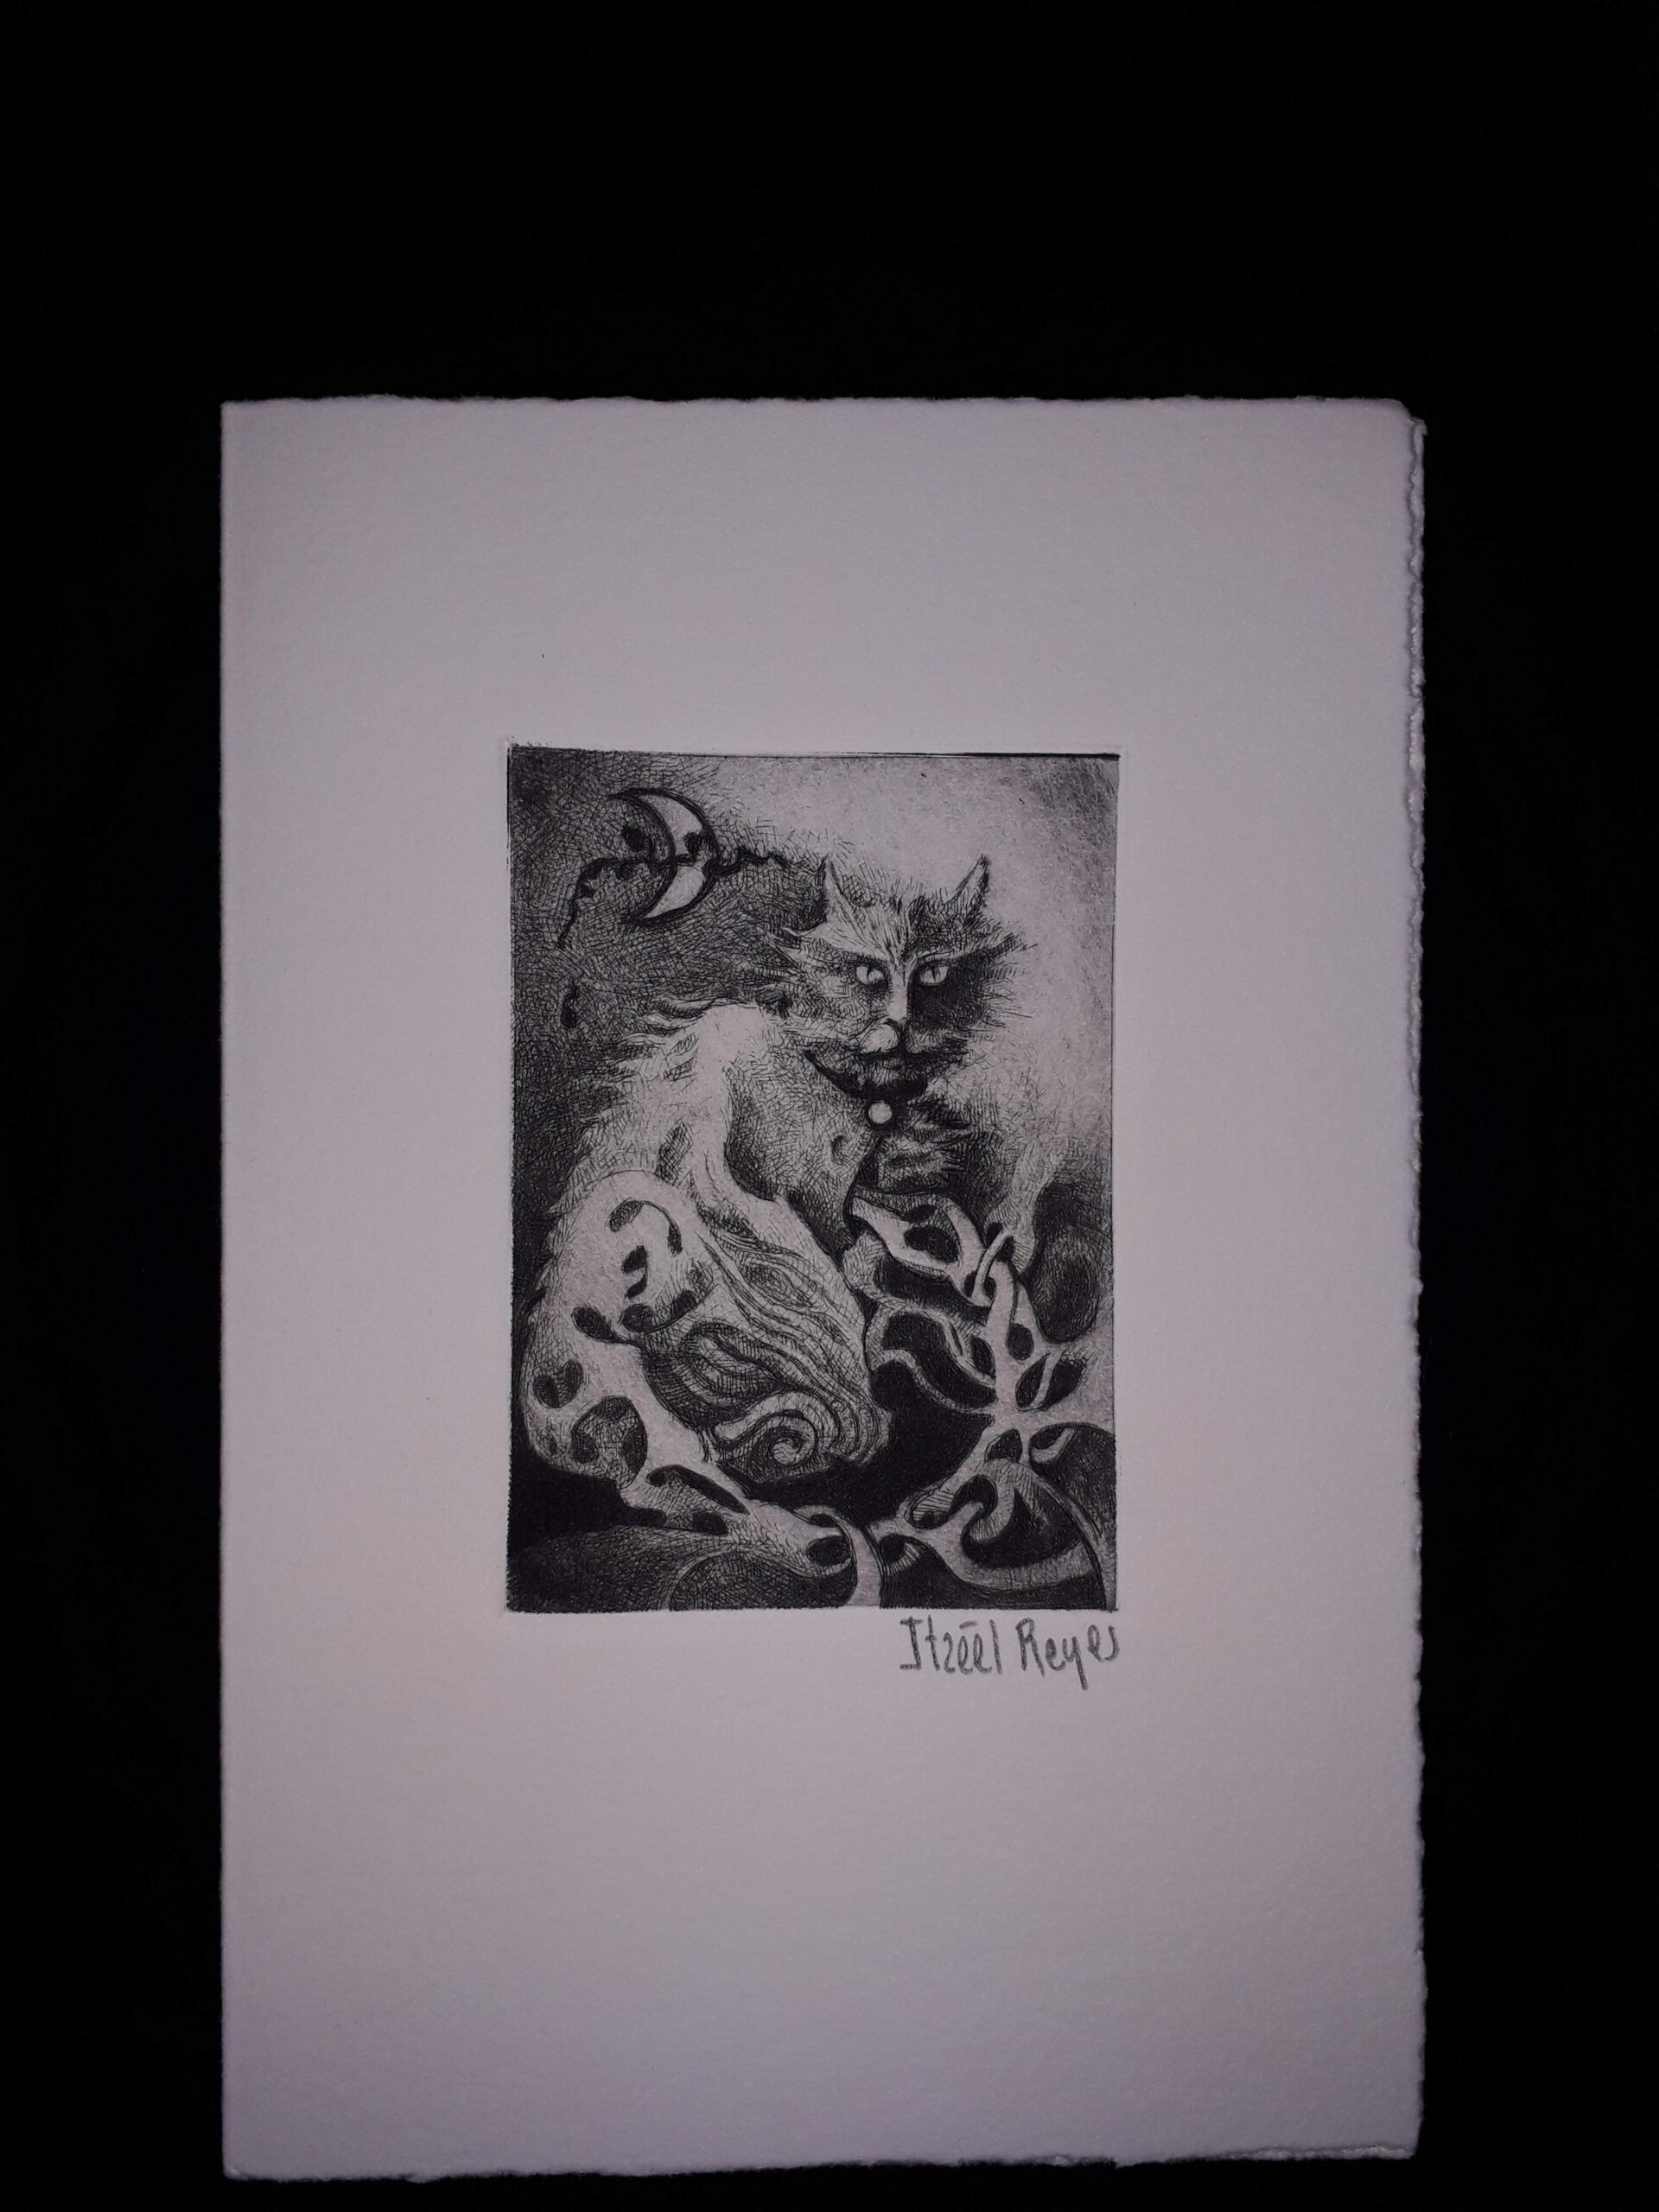 Título: “Gato y luna ”
Técnica: Punta seca
Medidas: 10 x 5 cm 
Autora: Itzeel Reyes